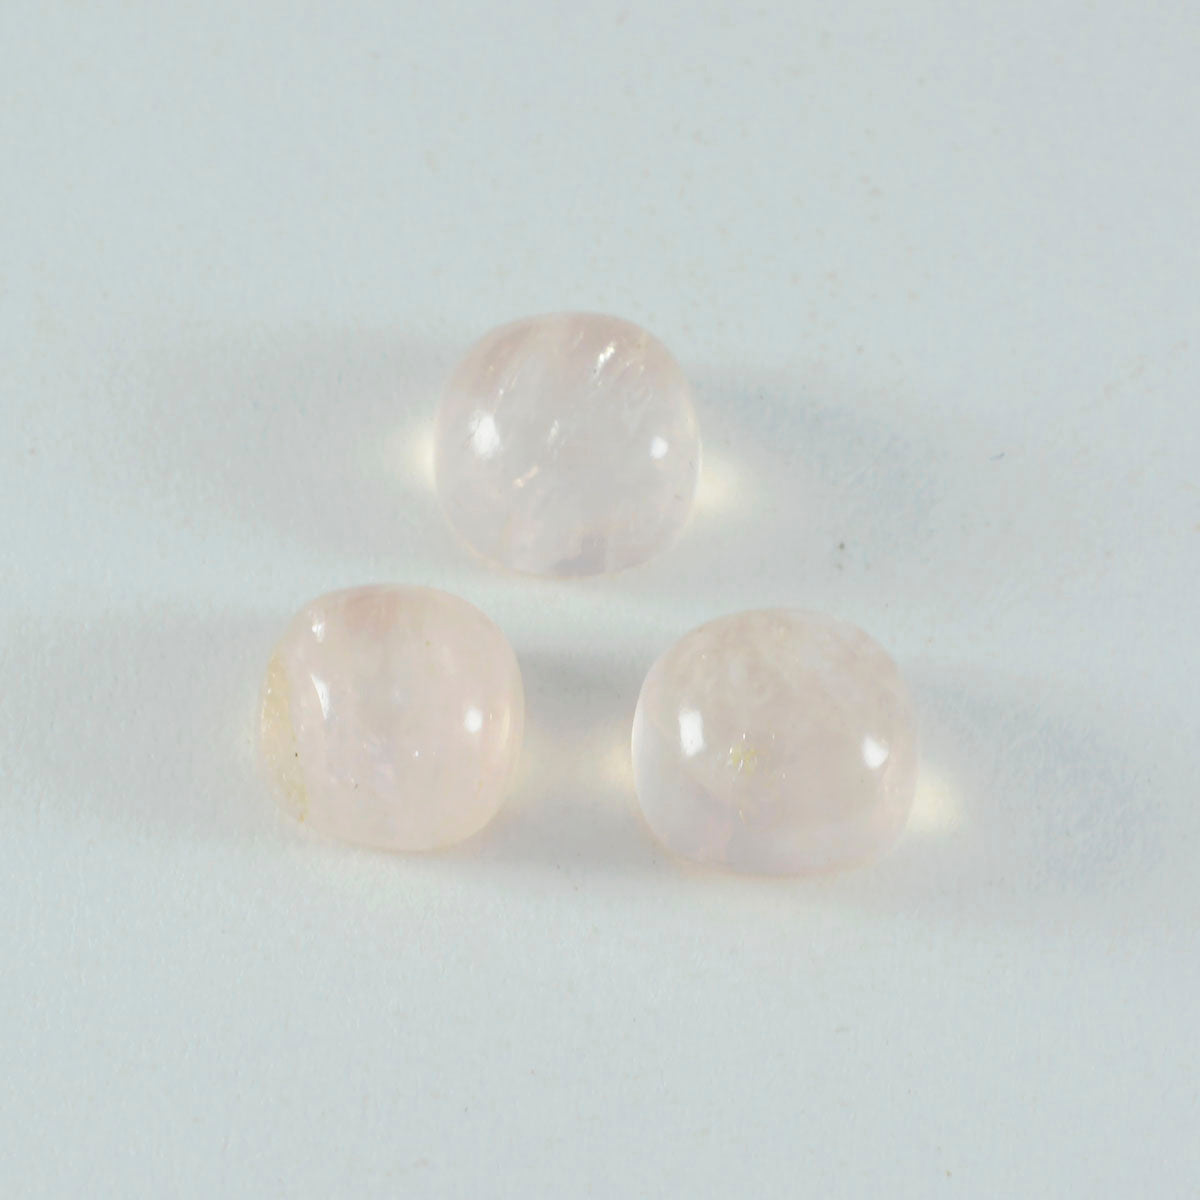 riyogems 1 pieza cabujón de cuarzo rosa rosa 5x5 mm forma de cojín gemas de calidad a+